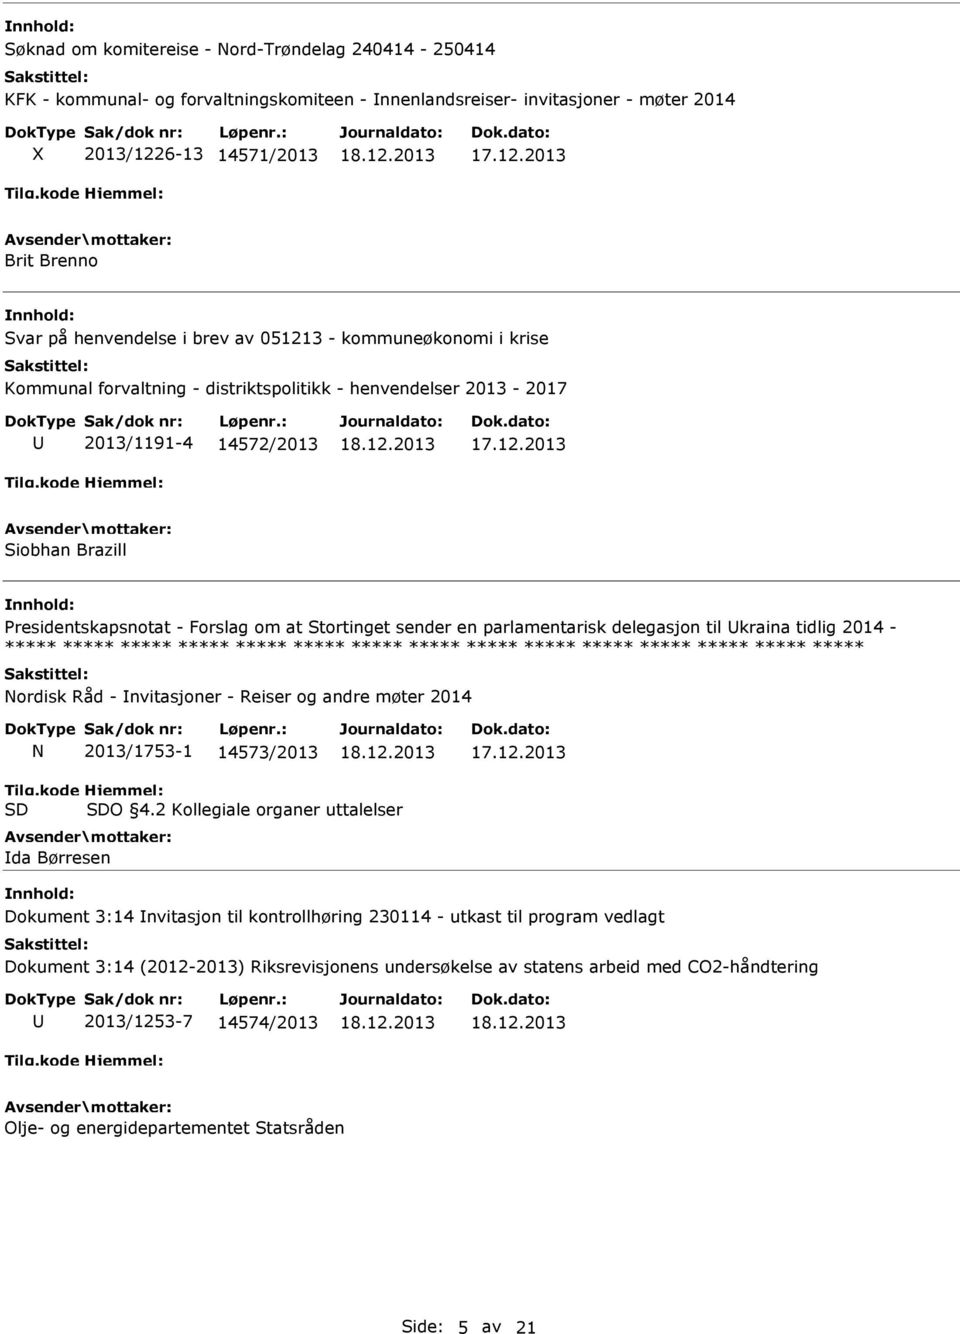 en parlamentarisk delegasjon til kraina tidlig 2014 - Nordisk Råd - nvitasjoner - Reiser og andre møter 2014 N 2013/1753-1 14573/2013 O 4.